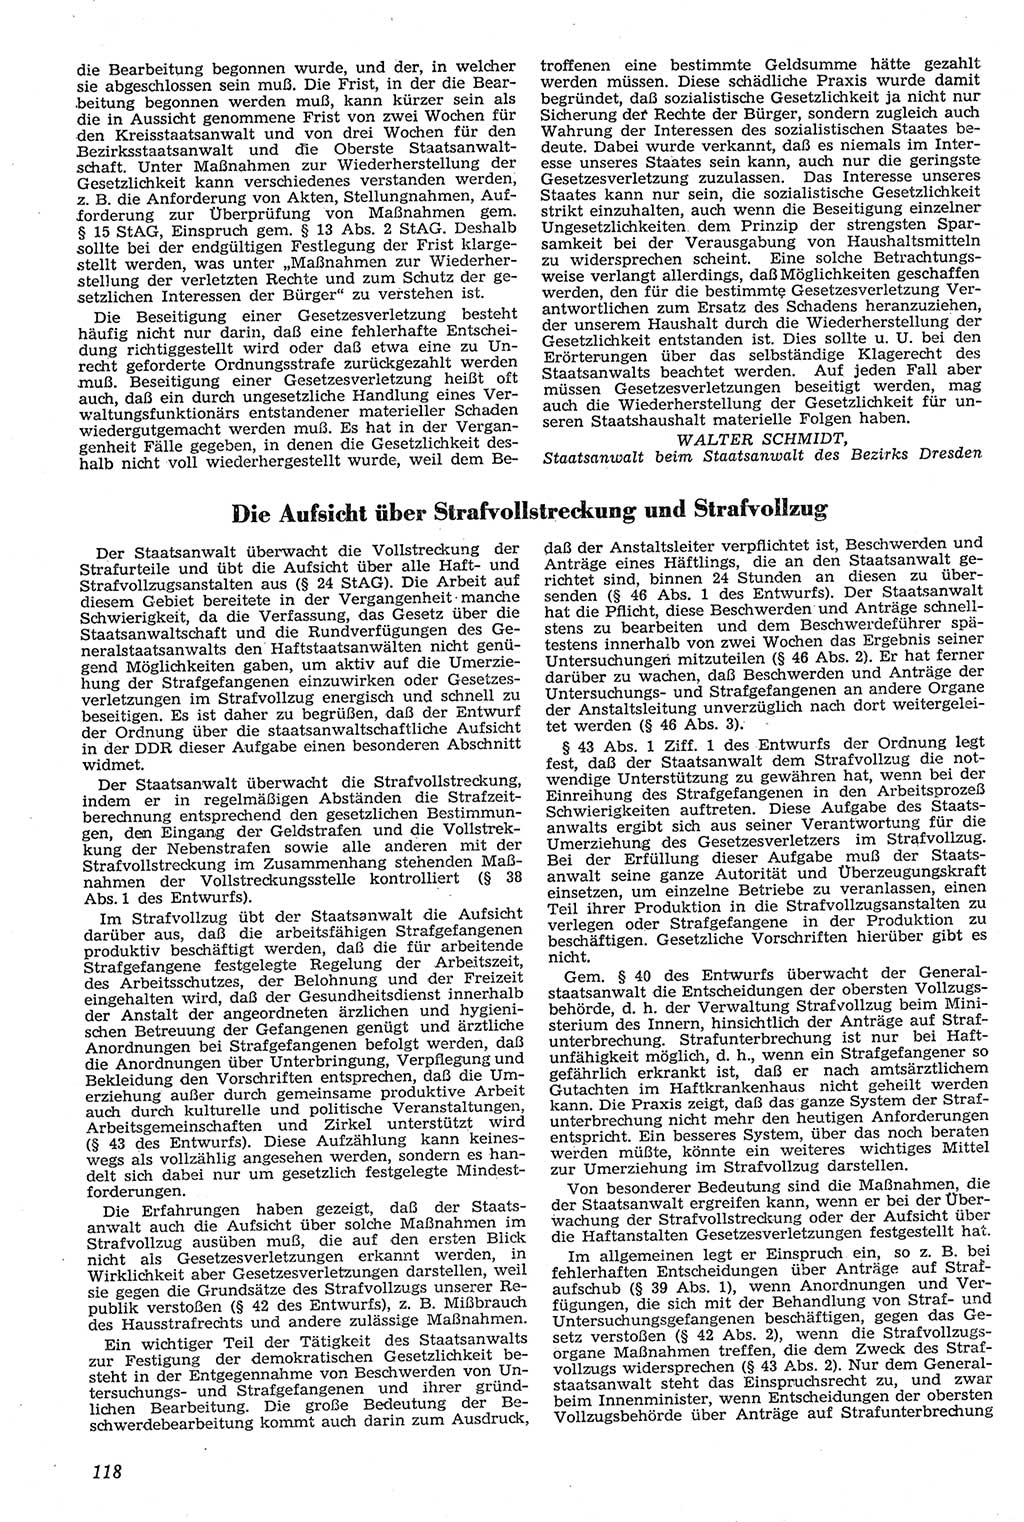 Neue Justiz (NJ), Zeitschrift für Recht und Rechtswissenschaft [Deutsche Demokratische Republik (DDR)], 11. Jahrgang 1957, Seite 118 (NJ DDR 1957, S. 118)